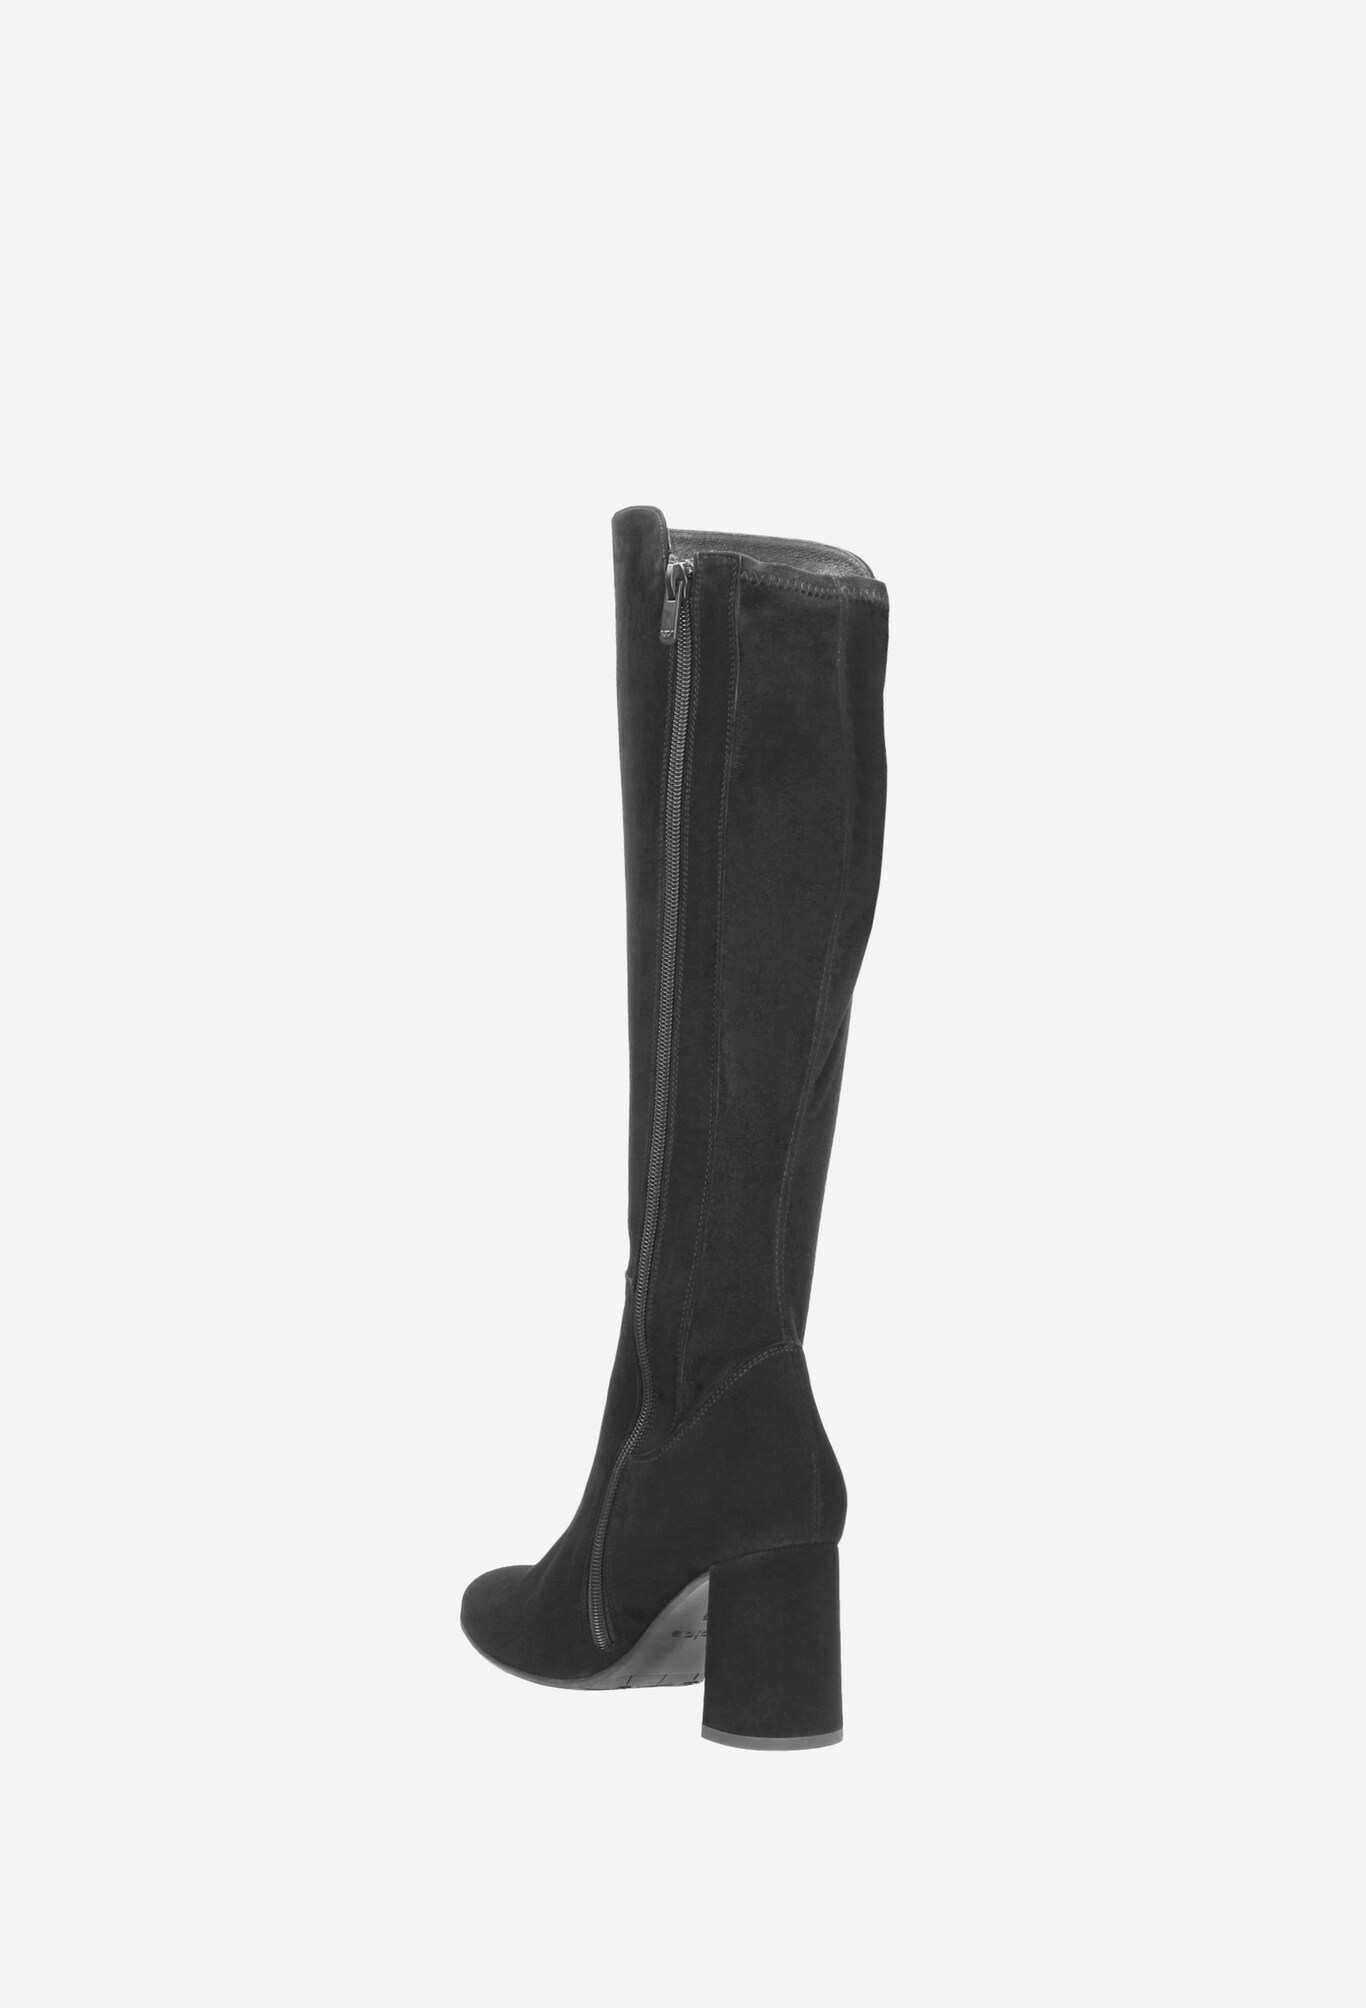 Women's knee-high boots 9662-81 | Wojas.eu online store